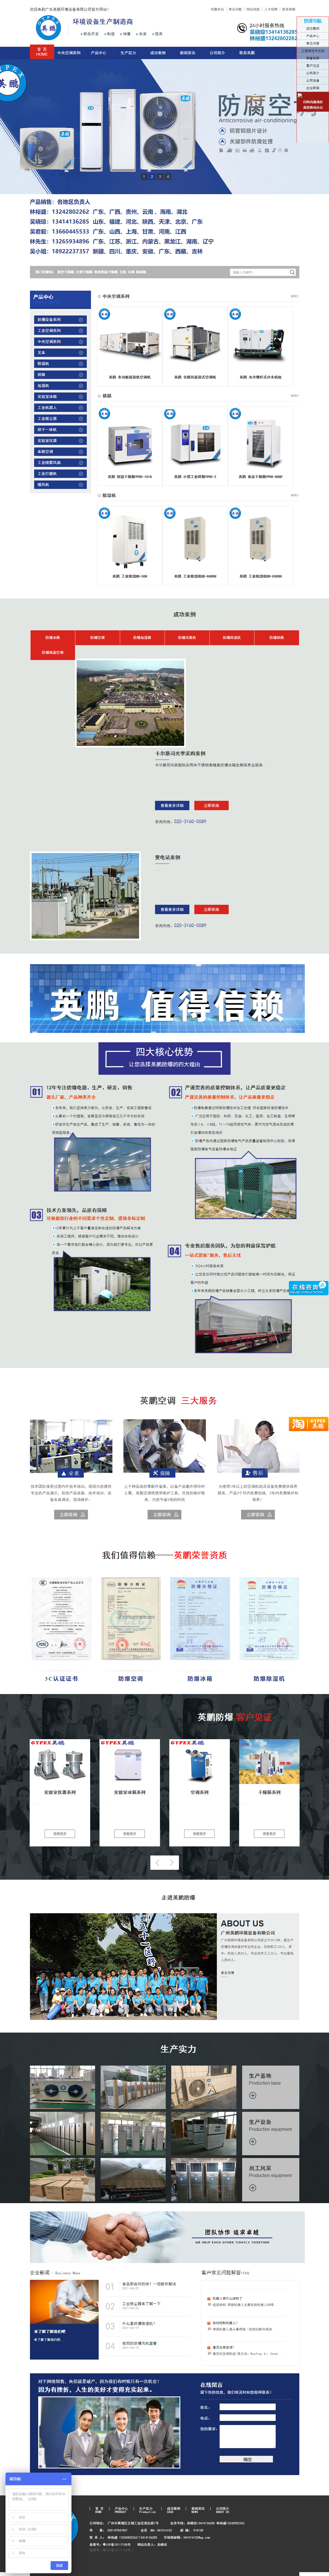 广东英鹏环境设备有限公司网站案例